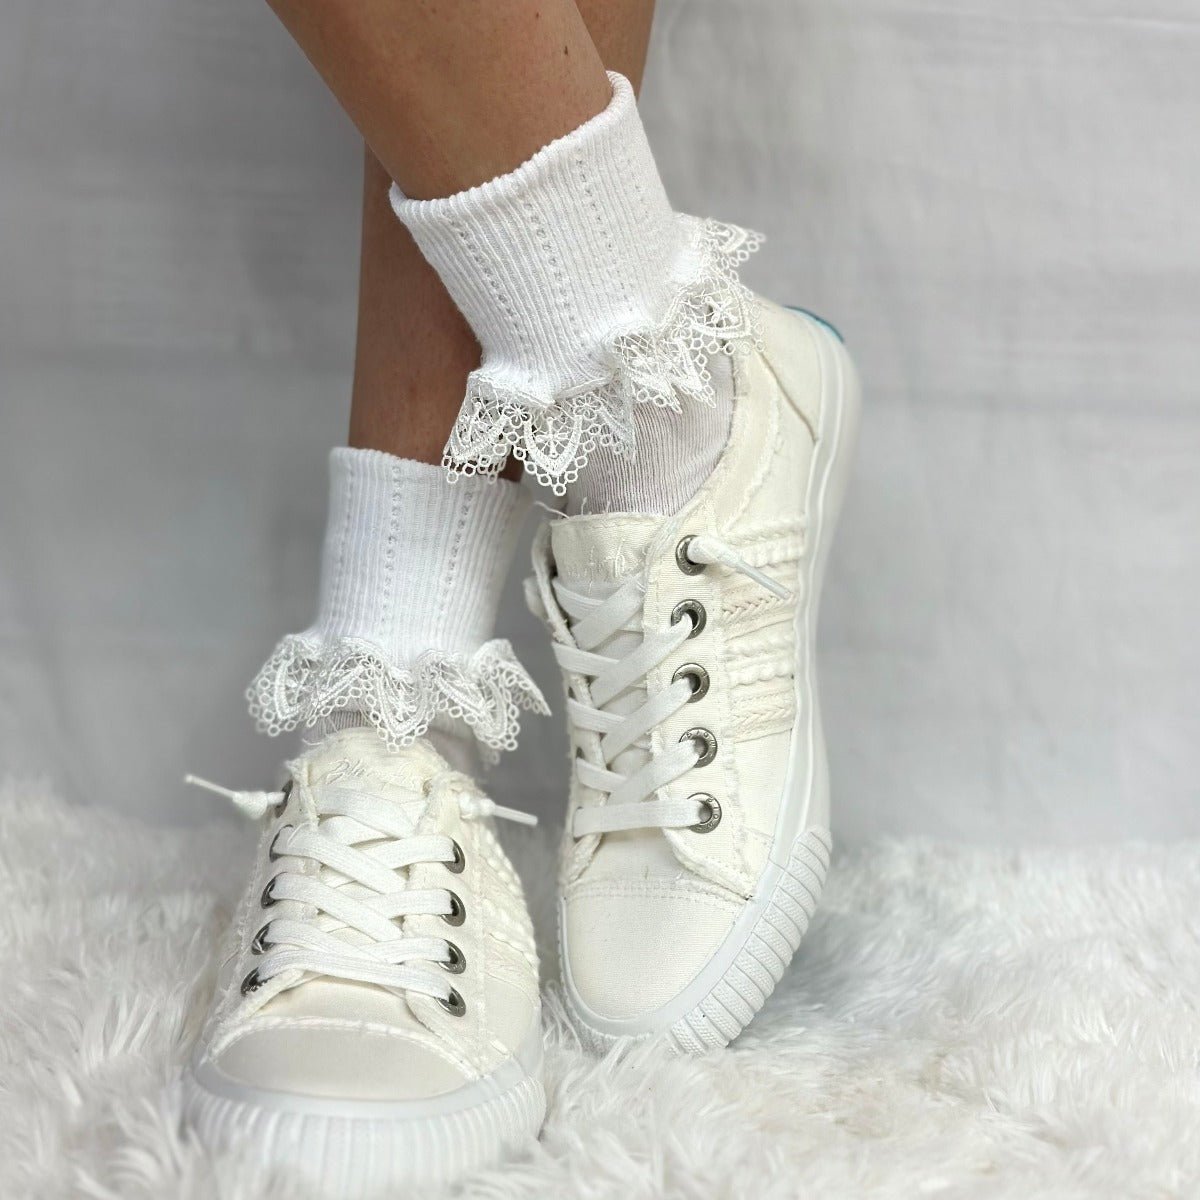 Chantilly  lace ankle cuff socks women - white ,  lacy designer socks women